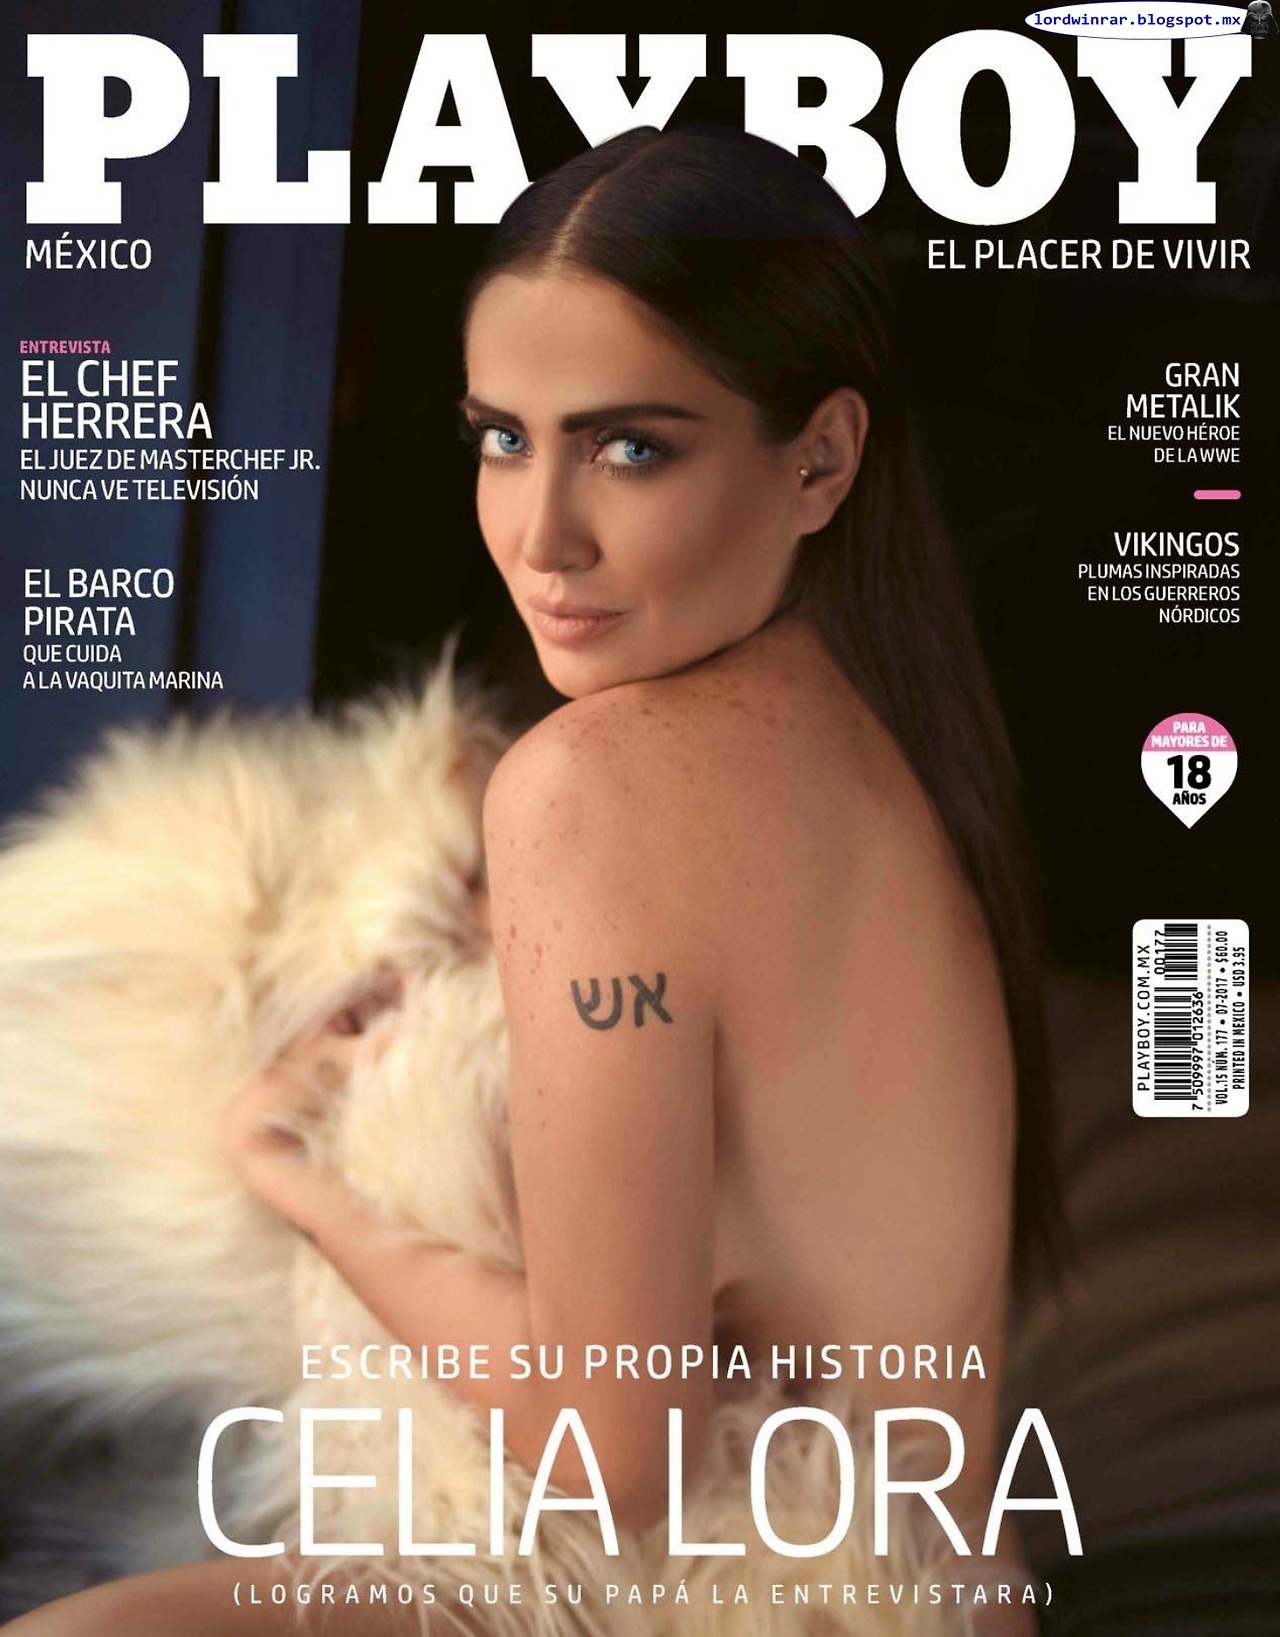   Celia Lora - Playboy Mexico 2017 Julio (49 Fotos HQ)Celia Lora desnuda en la revista